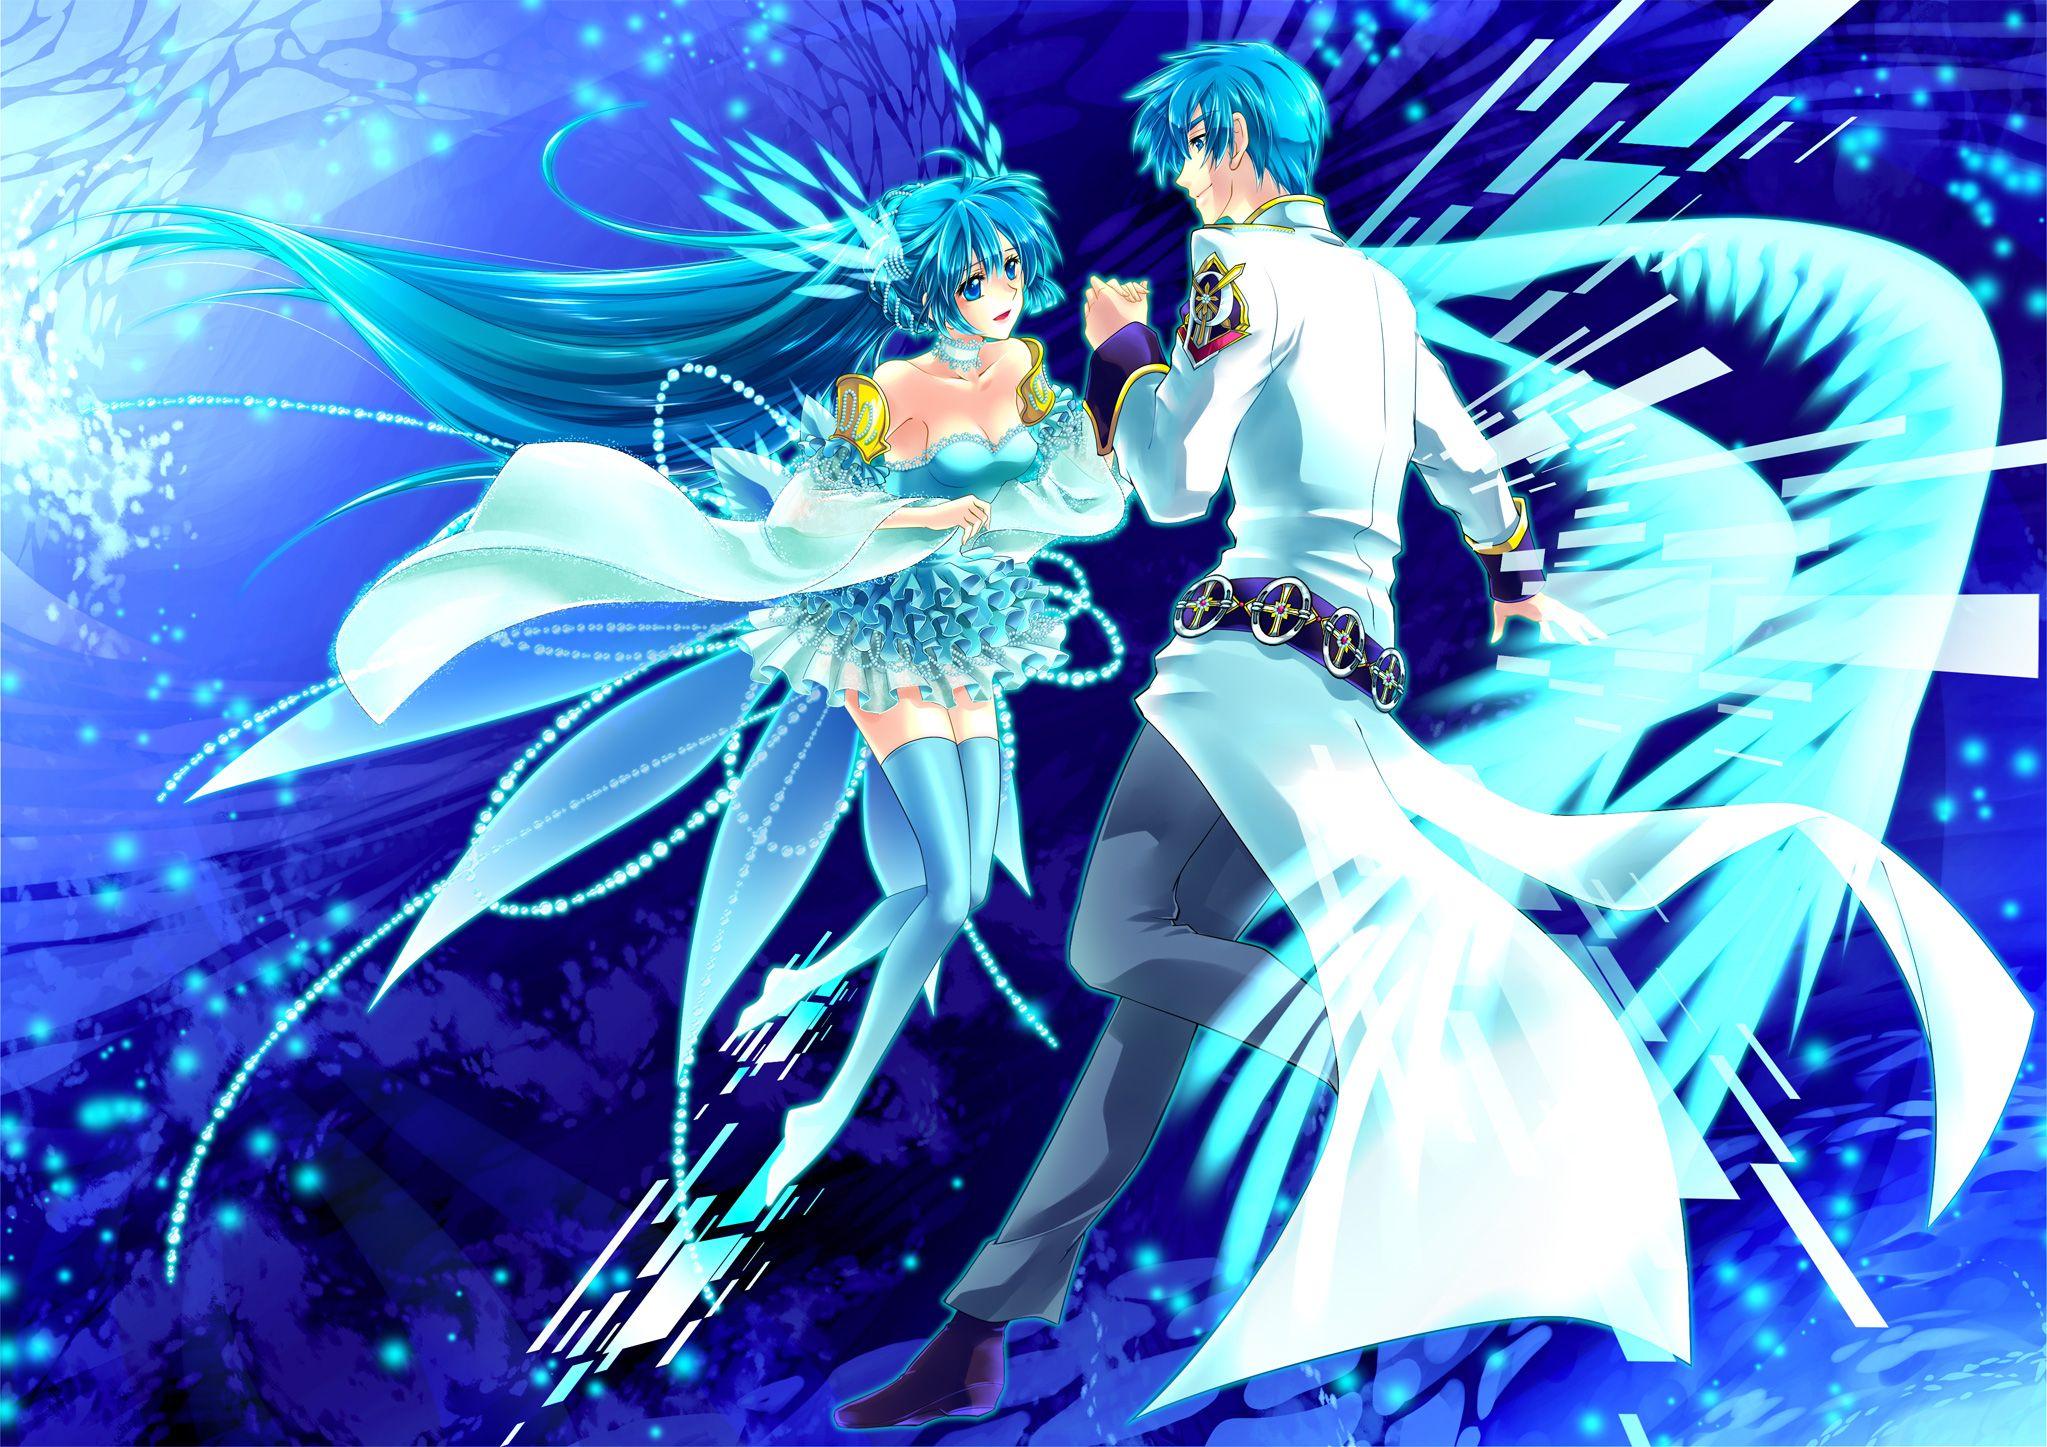 Dancing Anime Blue Wallpaper. Anime, Blue anime, Digital wallpaper